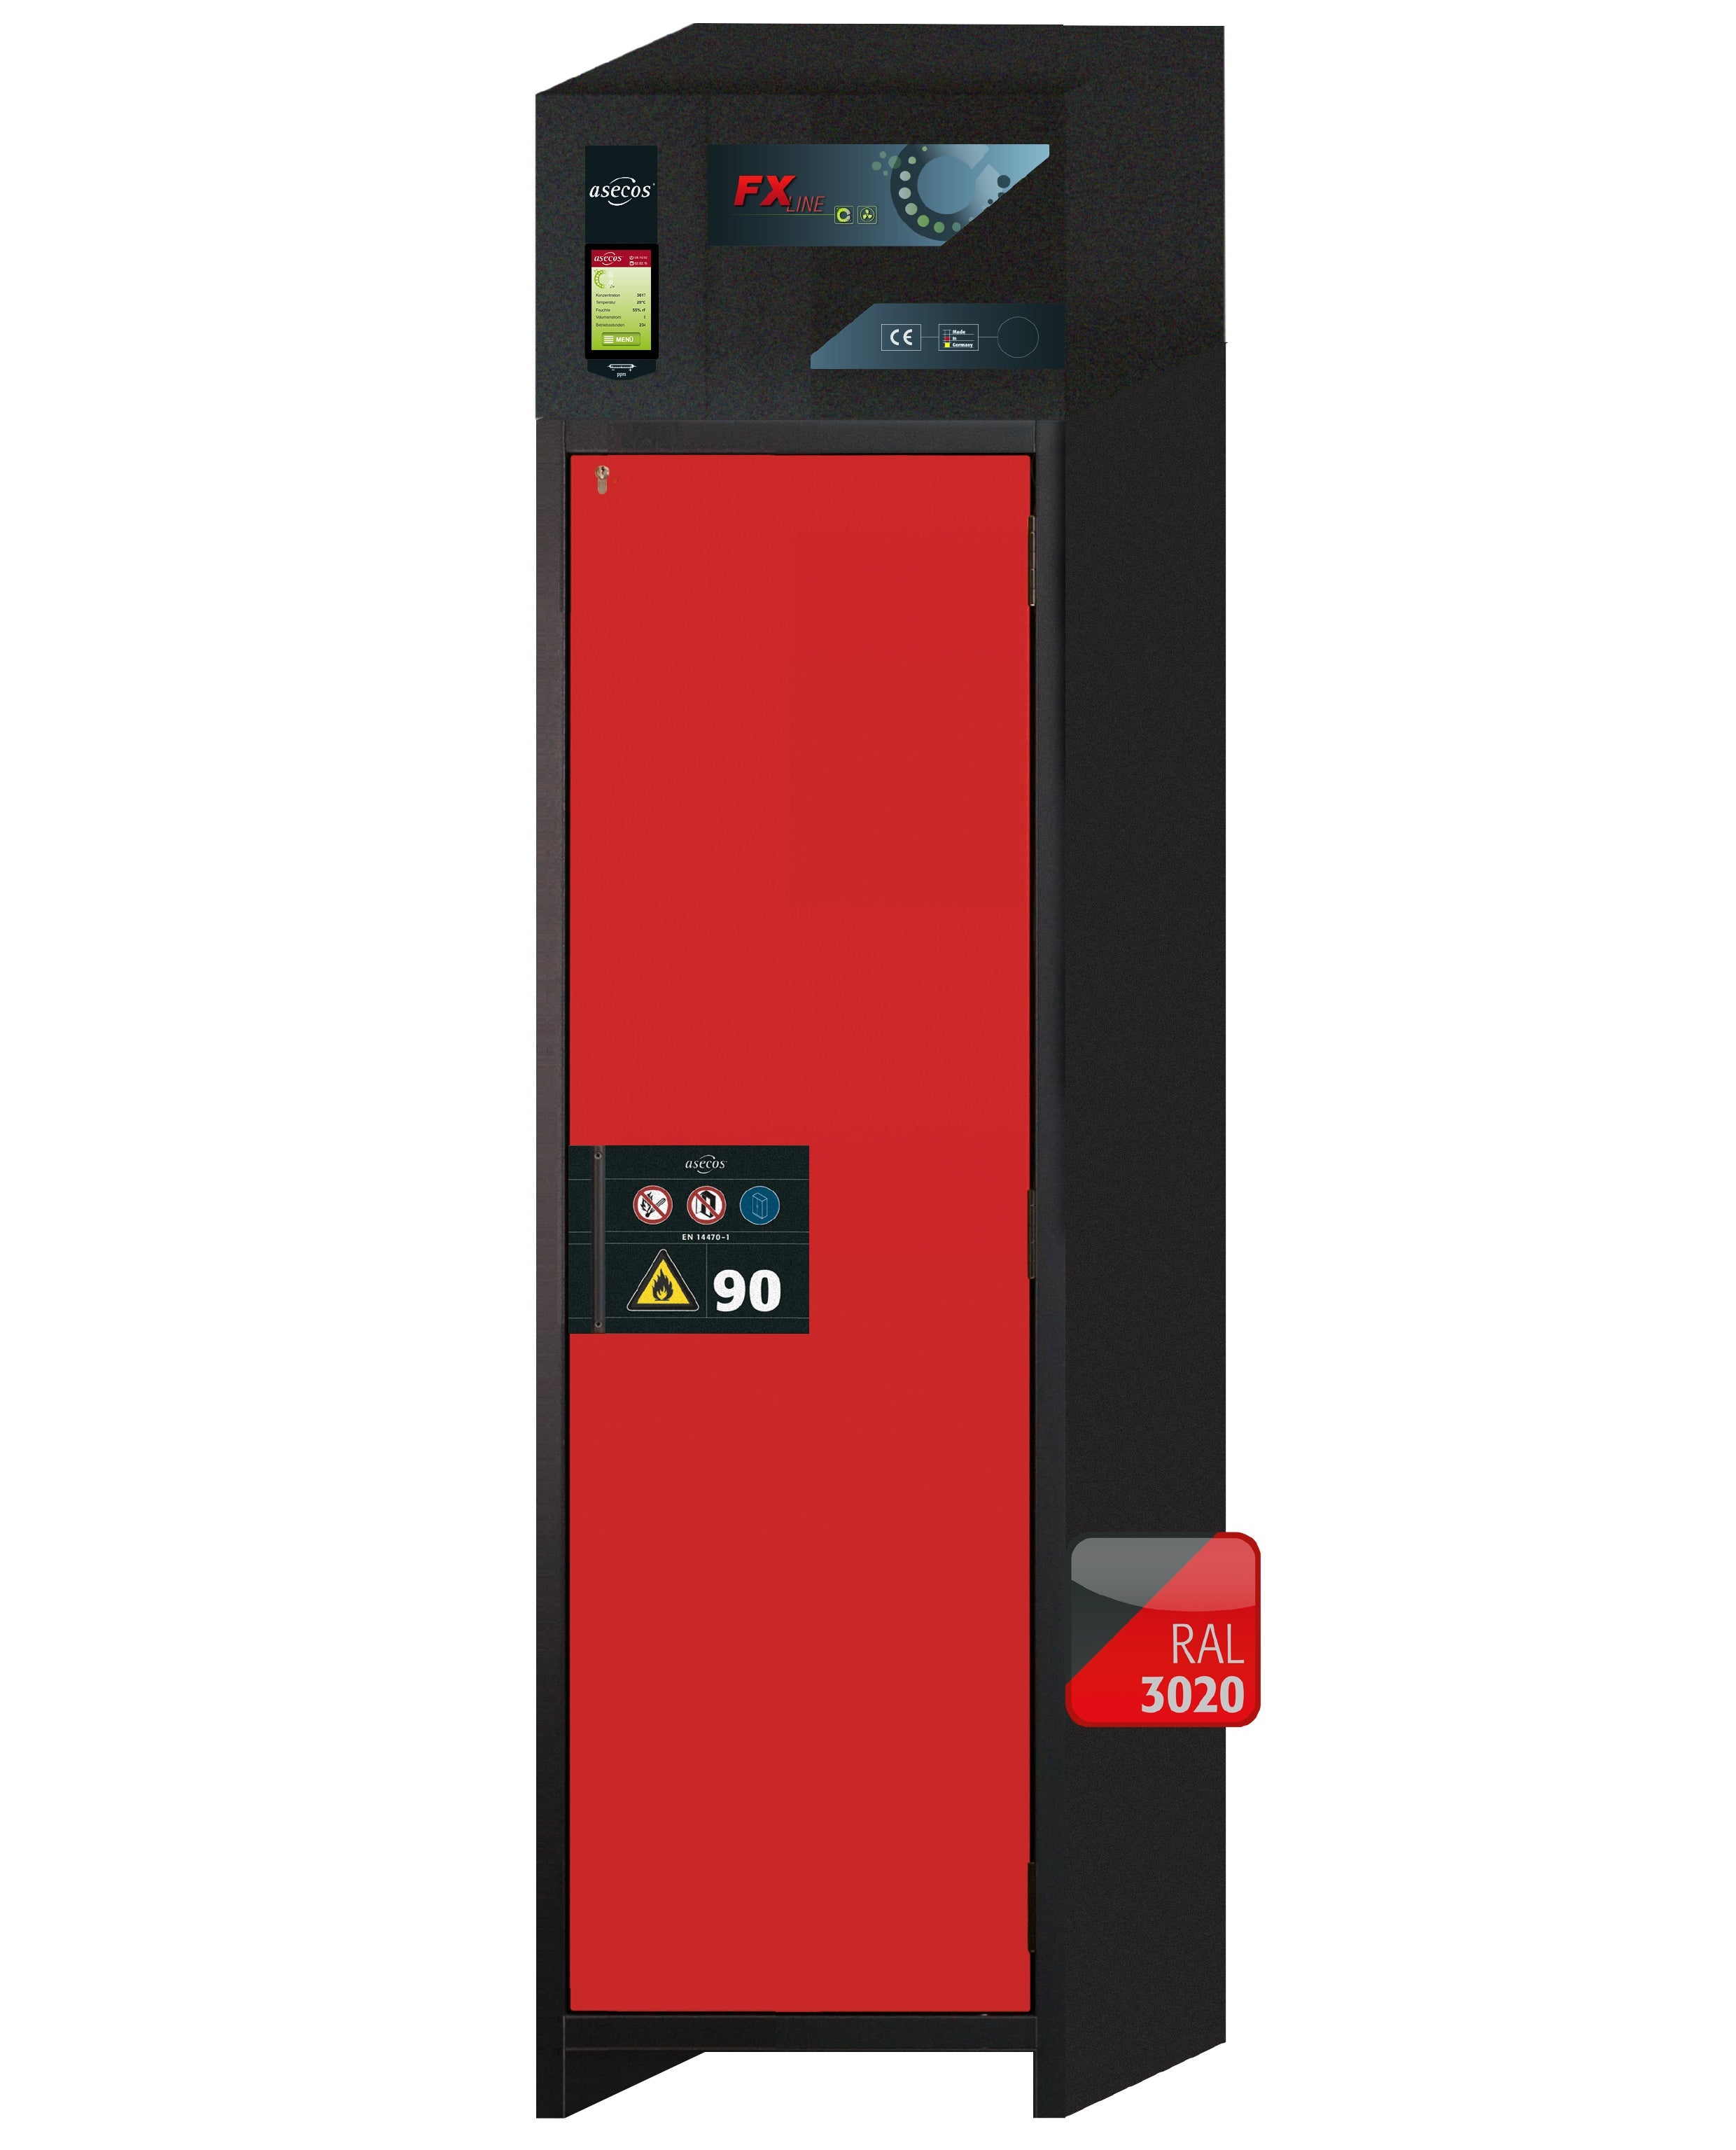 Armoire de filtration d'air recyclé type 90 FX-PEGASUS-90 modèle FX90.229.060.WDACR en rouge signalisation RAL 3020 avec 3 étagères standard (tôle d'acier)